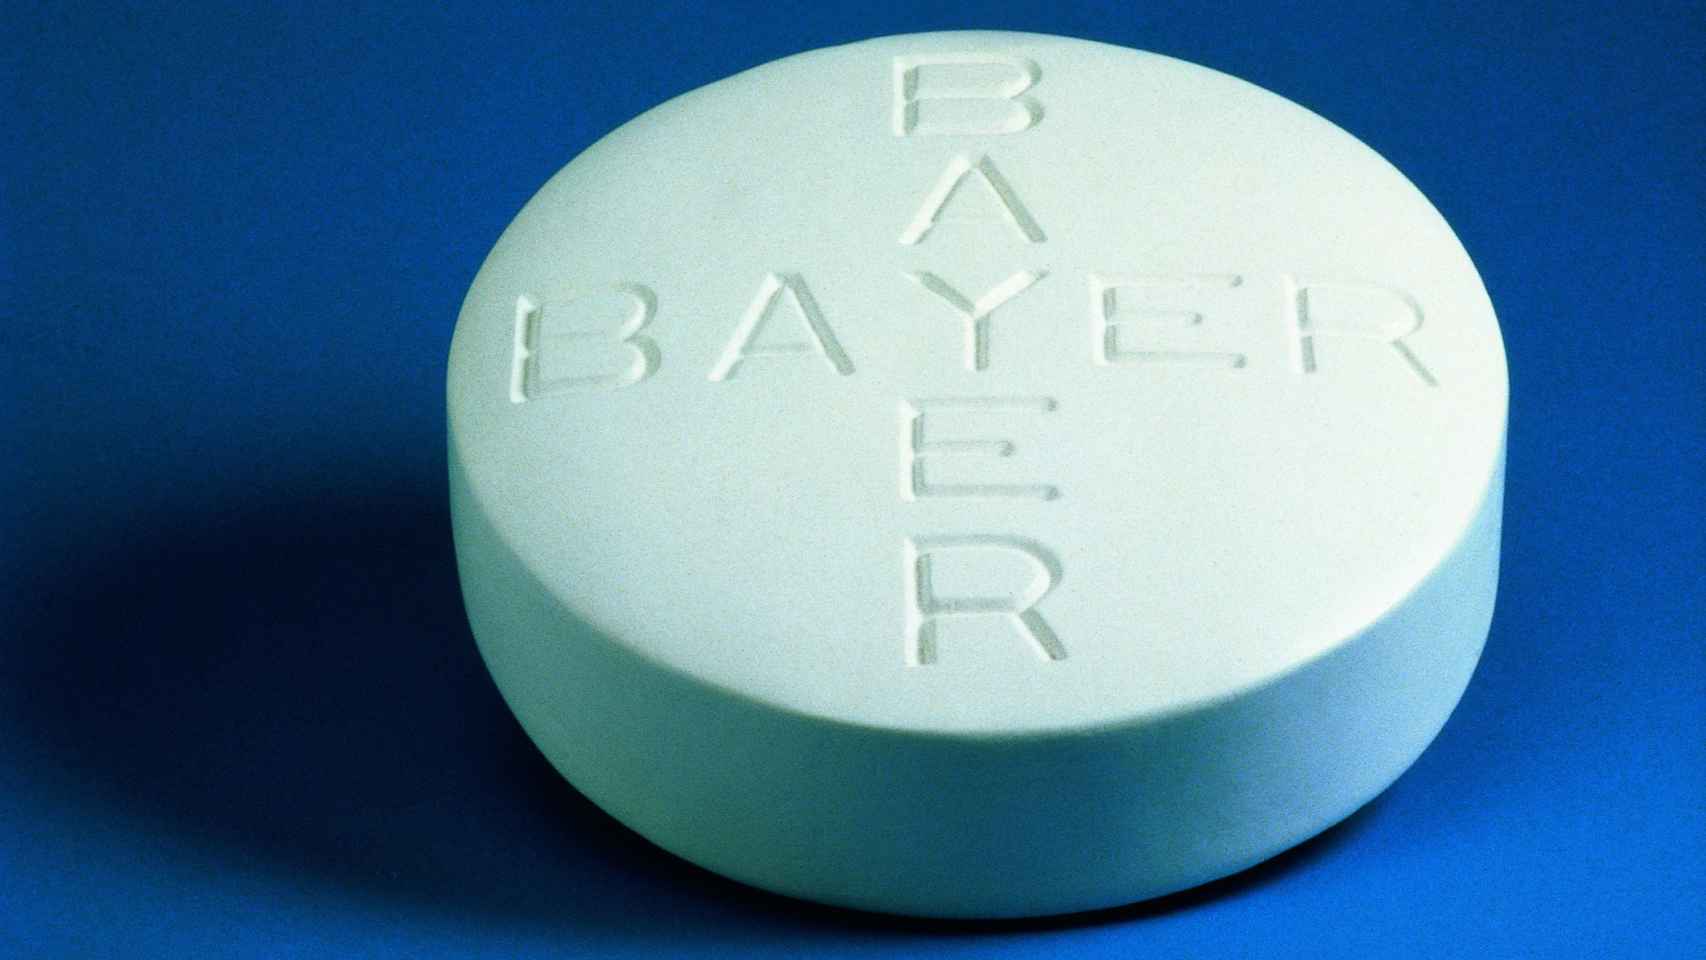 Una aspirina de Bayer.